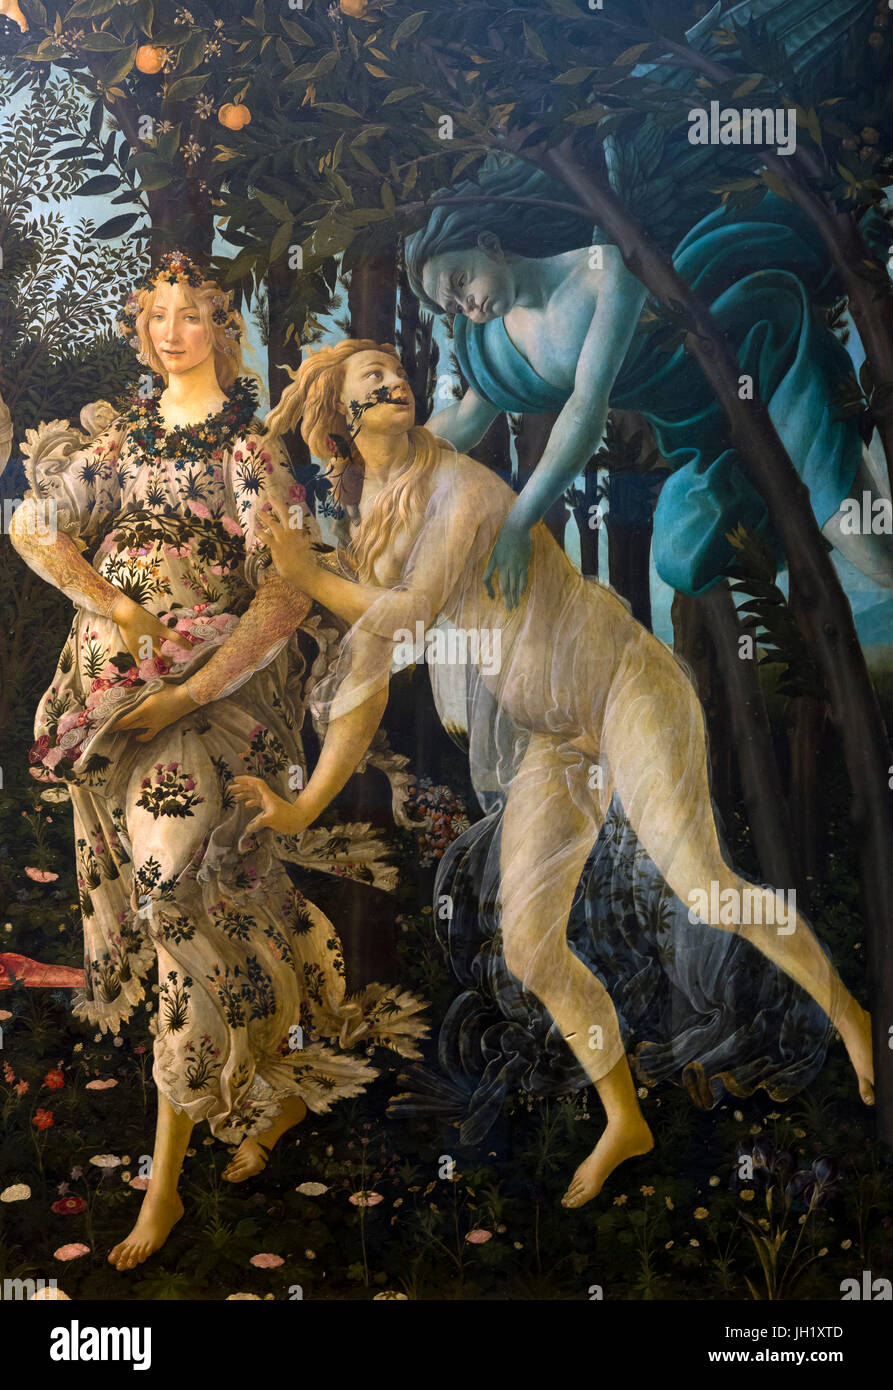 Primavera, Allégorie du printemps, tempera peinture sur panneau, par Sandro Botticelli, vers1482, Galerie des Offices, Florence, Toscane, Italie, Europe Banque D'Images